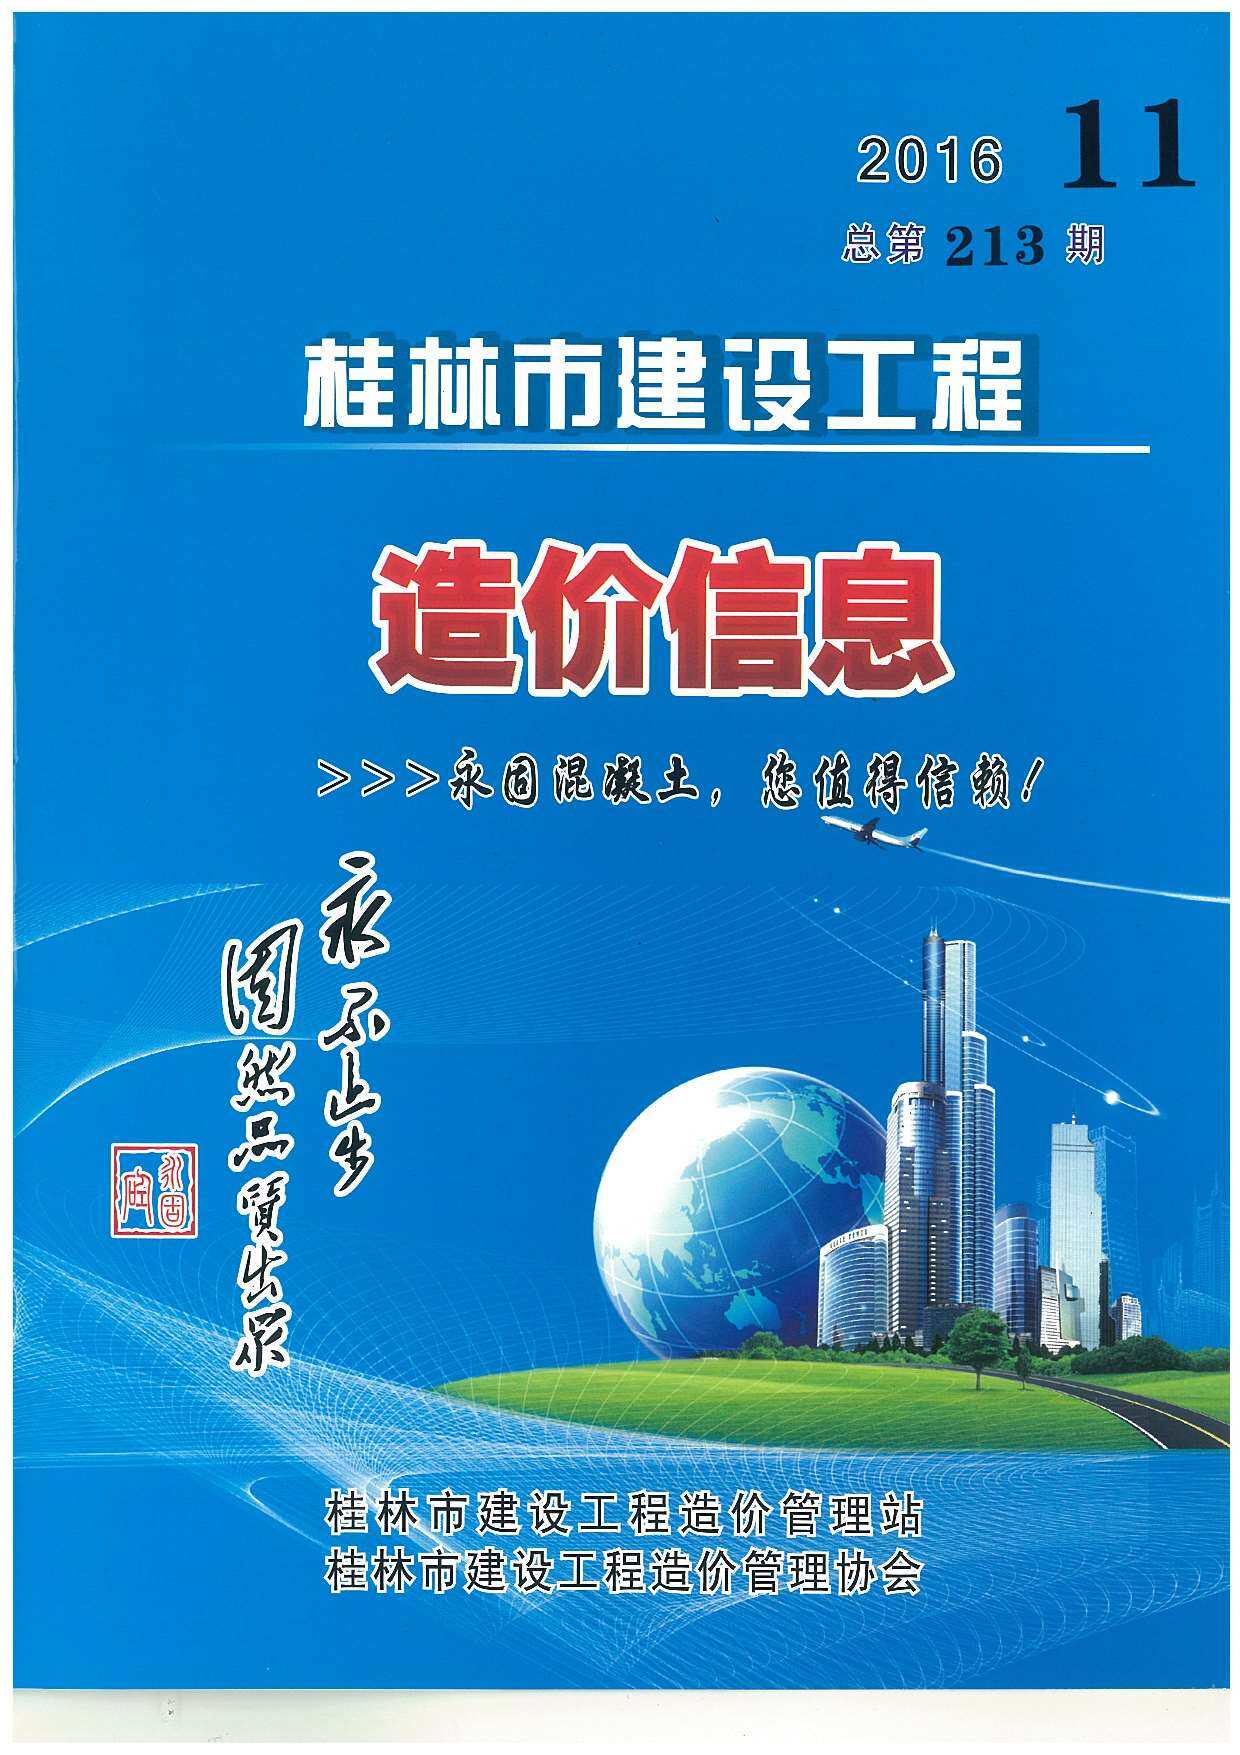 桂林市2016年11月工程造价信息期刊